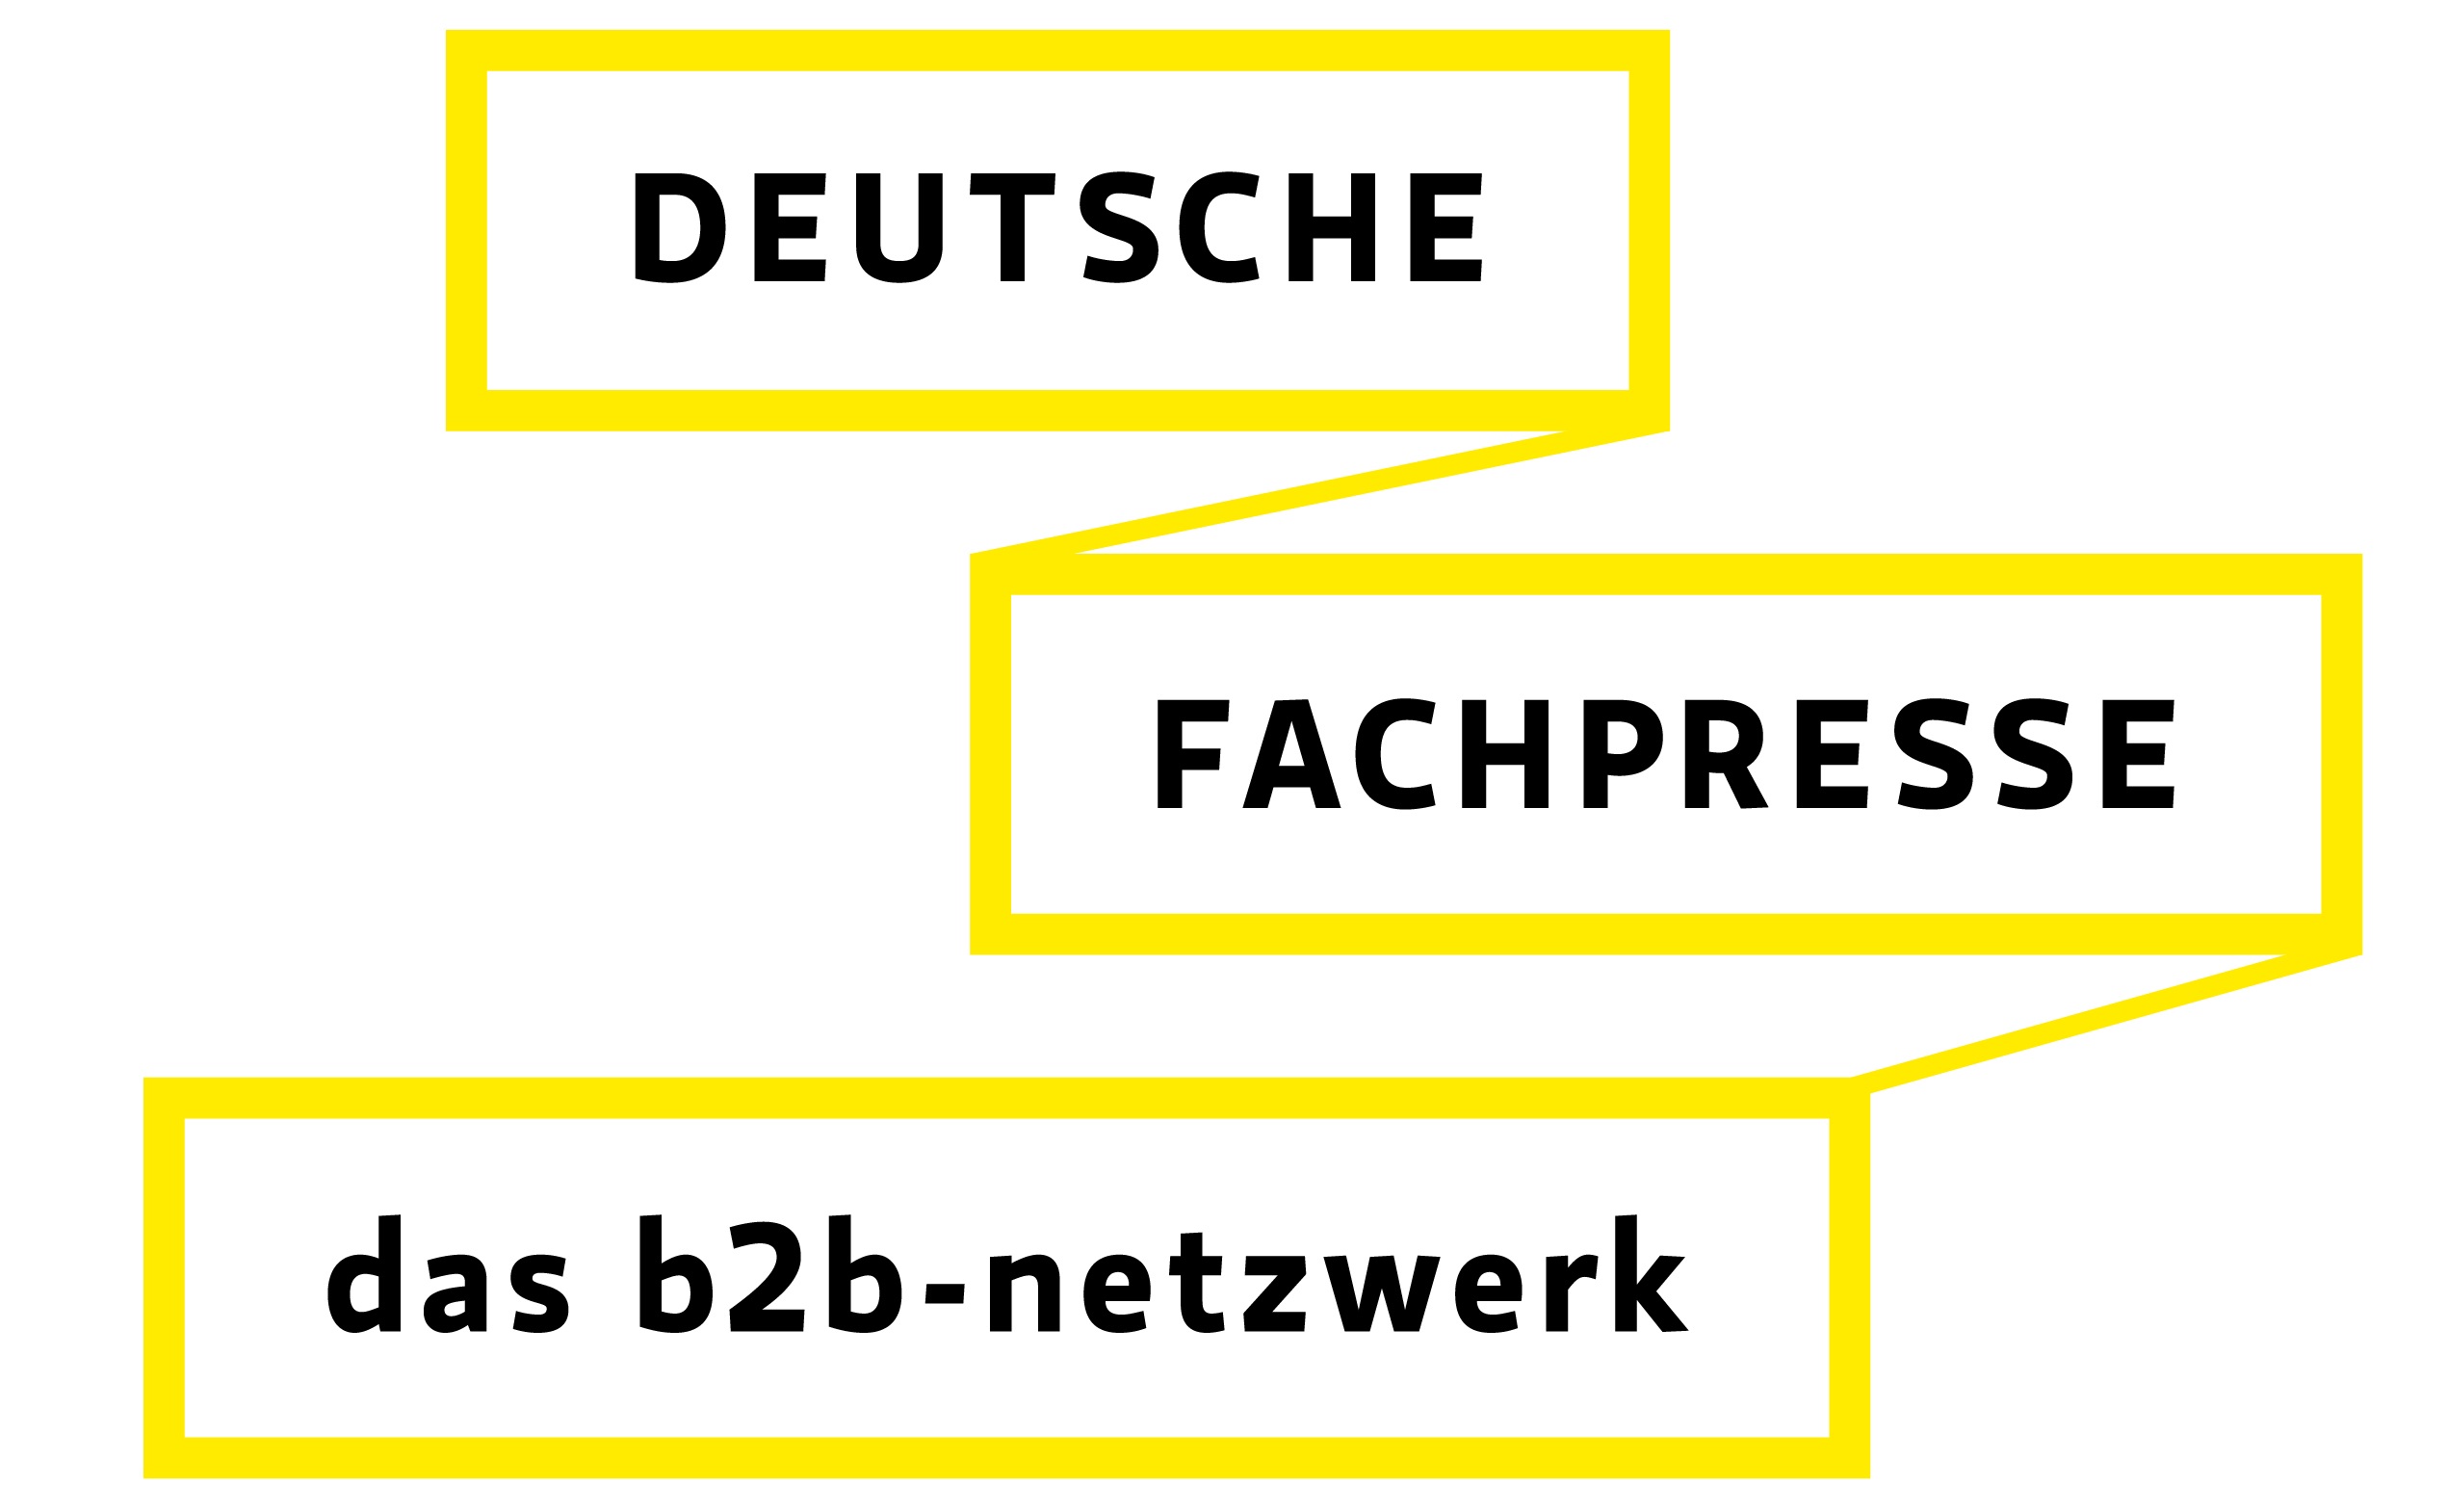 Deutsche Fachpresse Logo Claim deutsch